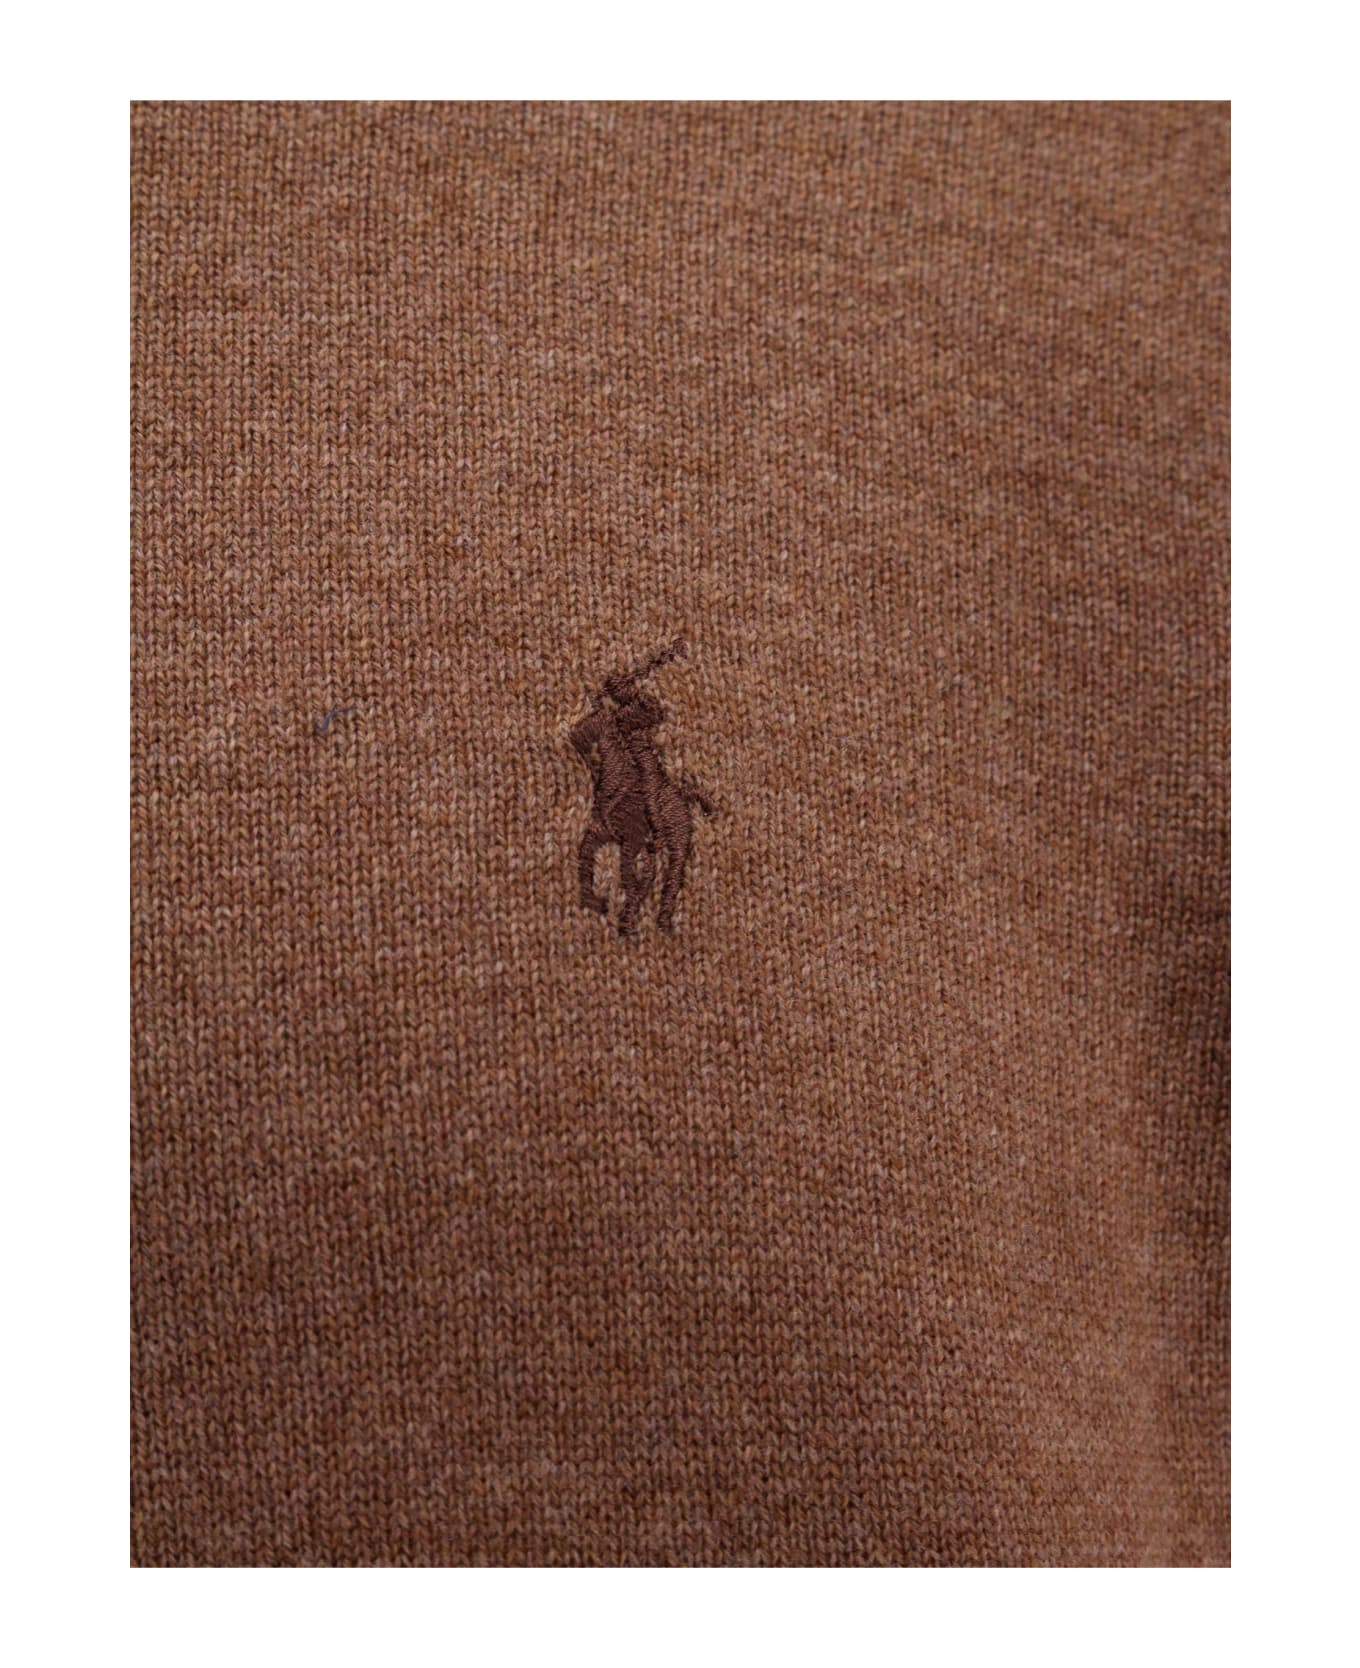 Polo Ralph Lauren Beige Wool Sweater - Brown